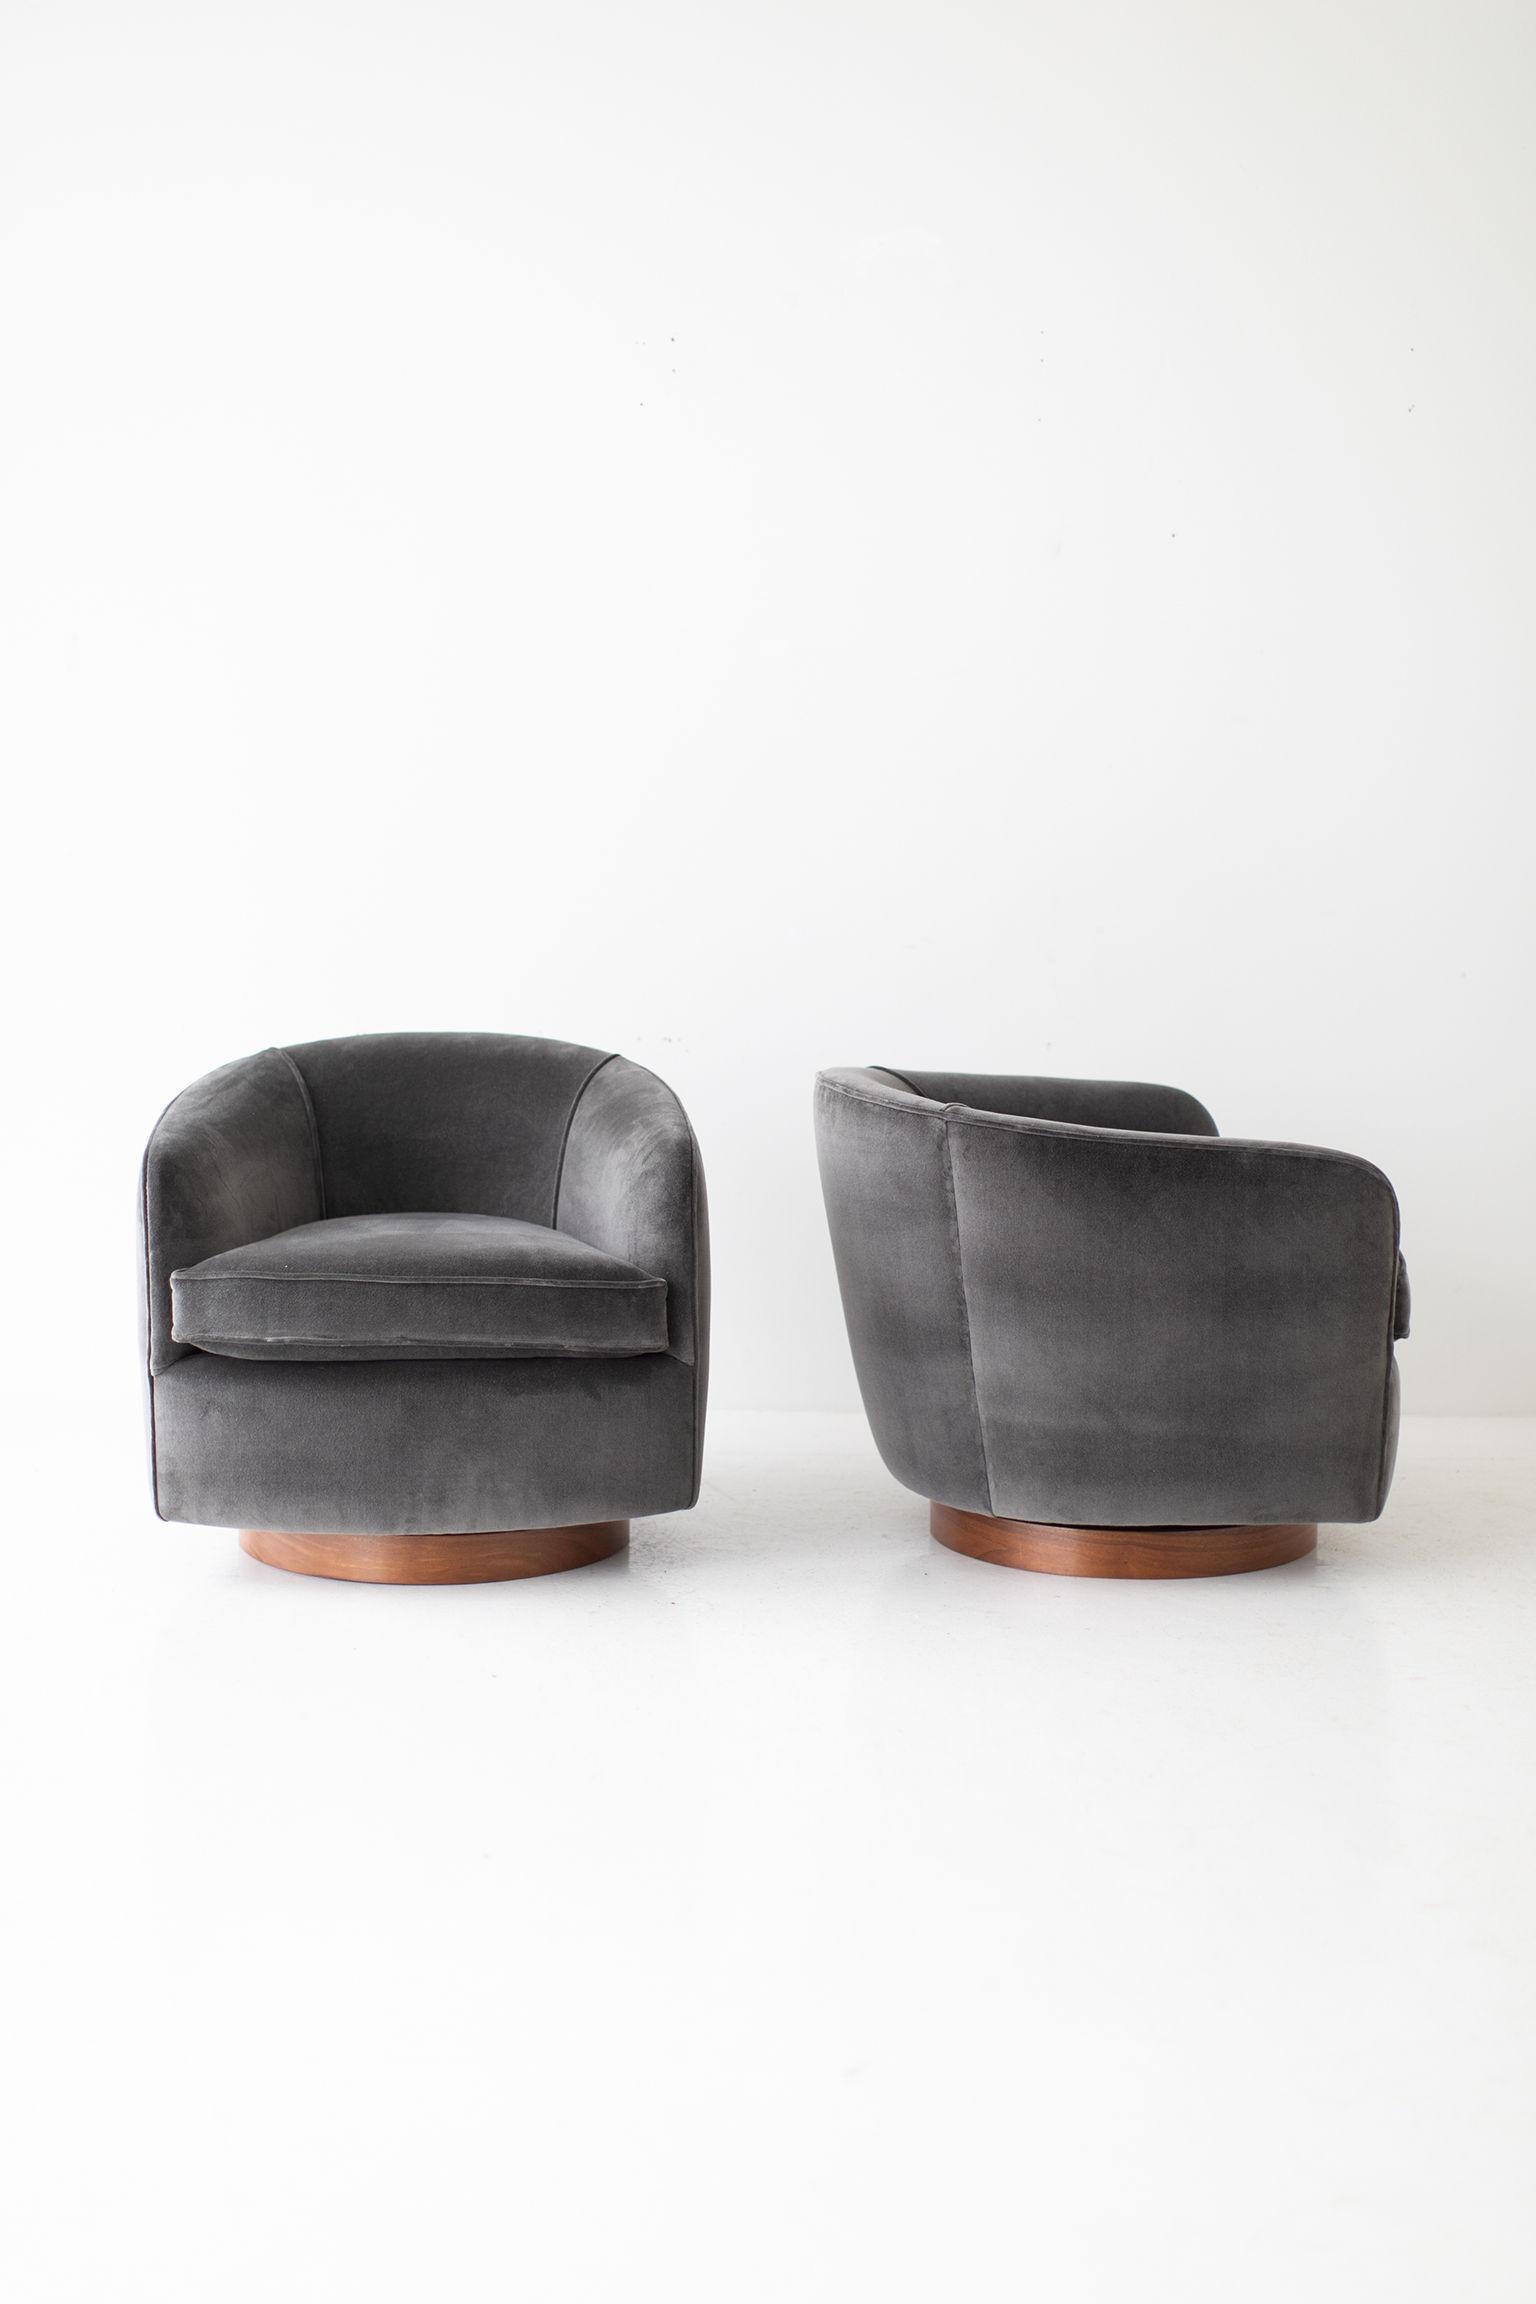 Milo Baughman Velvet Swivel and Tilt Lounge Chairs for Thayer Coggin 3